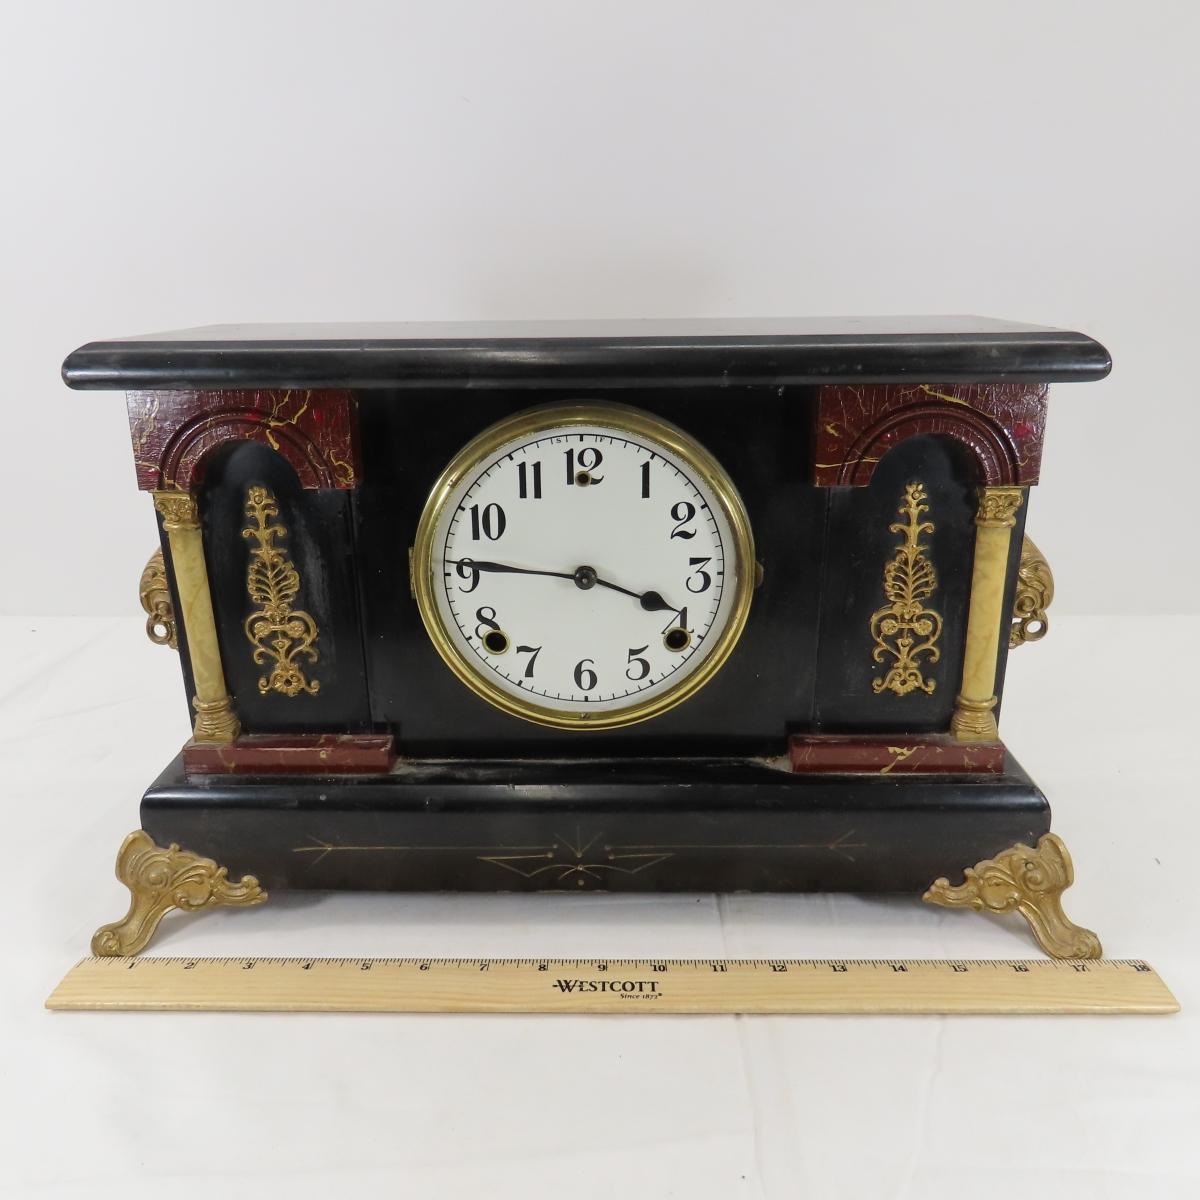 Antique Gilbert Mantle Clock for Repair & More